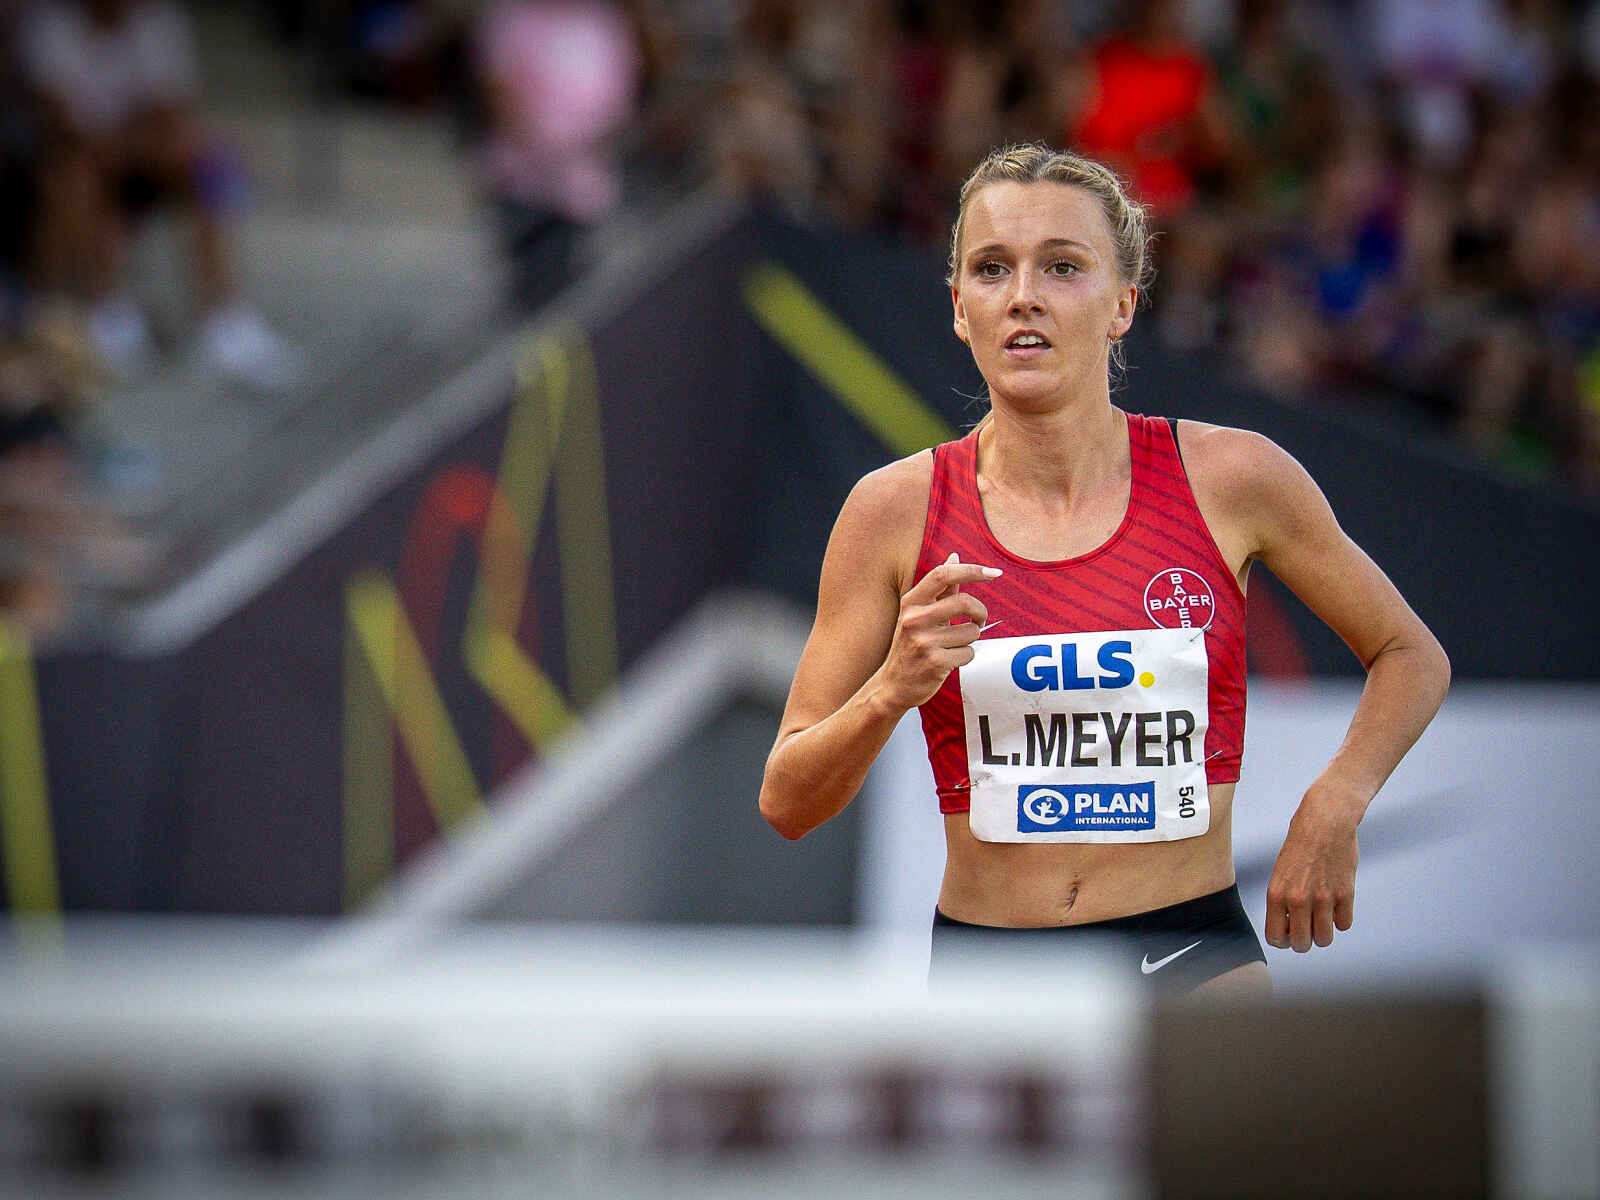 Lea Meyer aus Löningen muss Start bei WM in Budapest absagen